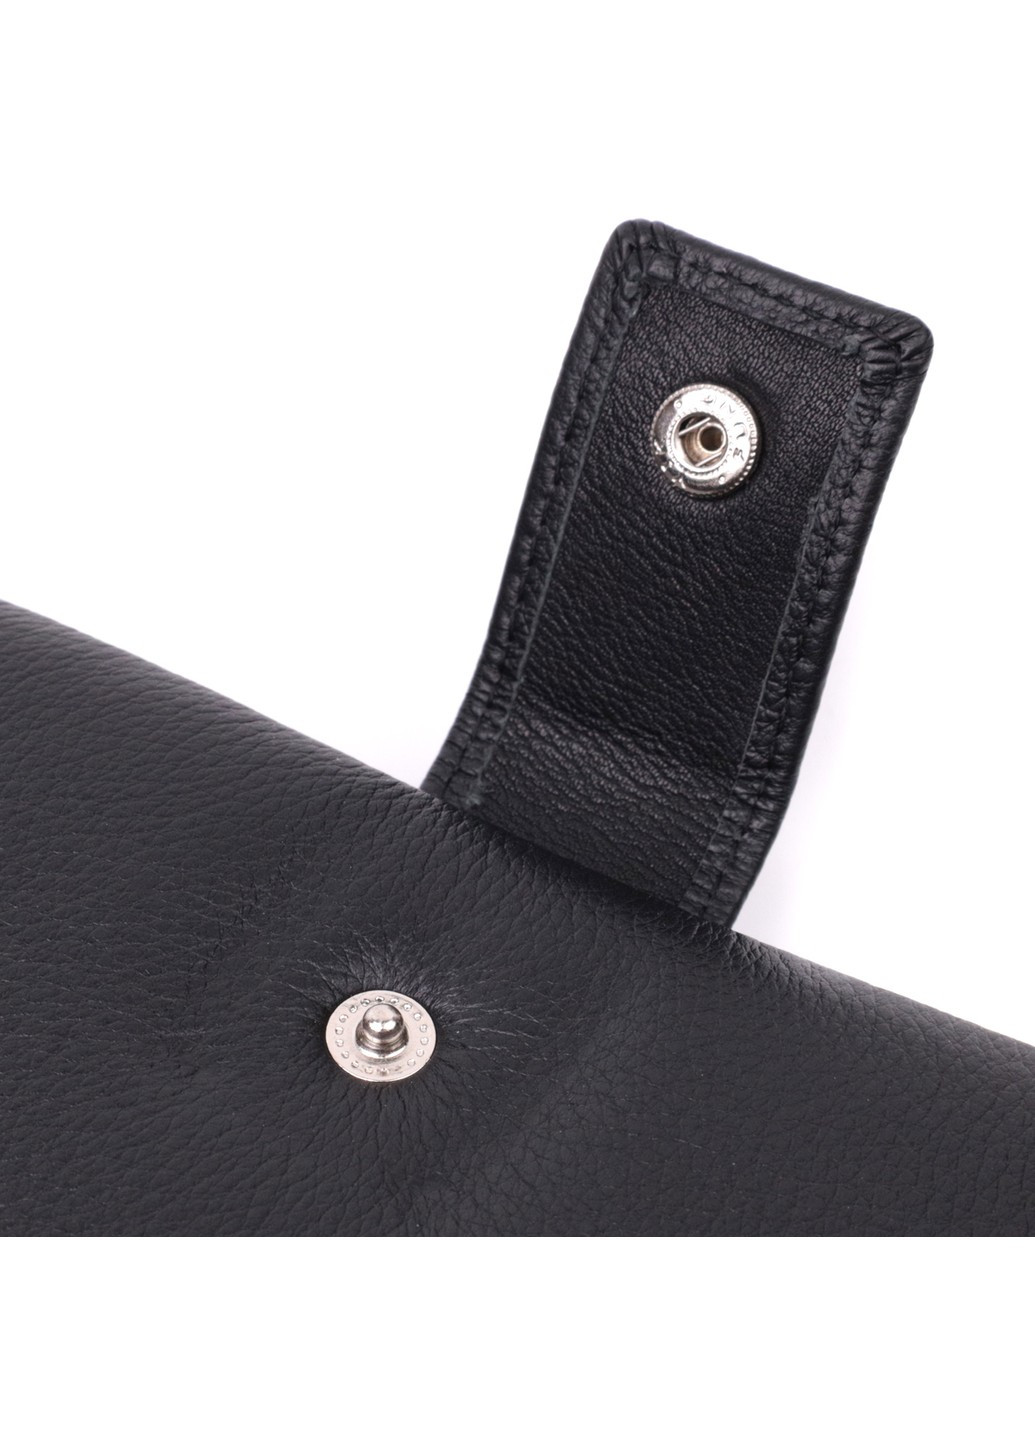 Лаконичный женский вертикальный кошелек-клатч из натуральной кожи 22537 Черный st leather (277980459)